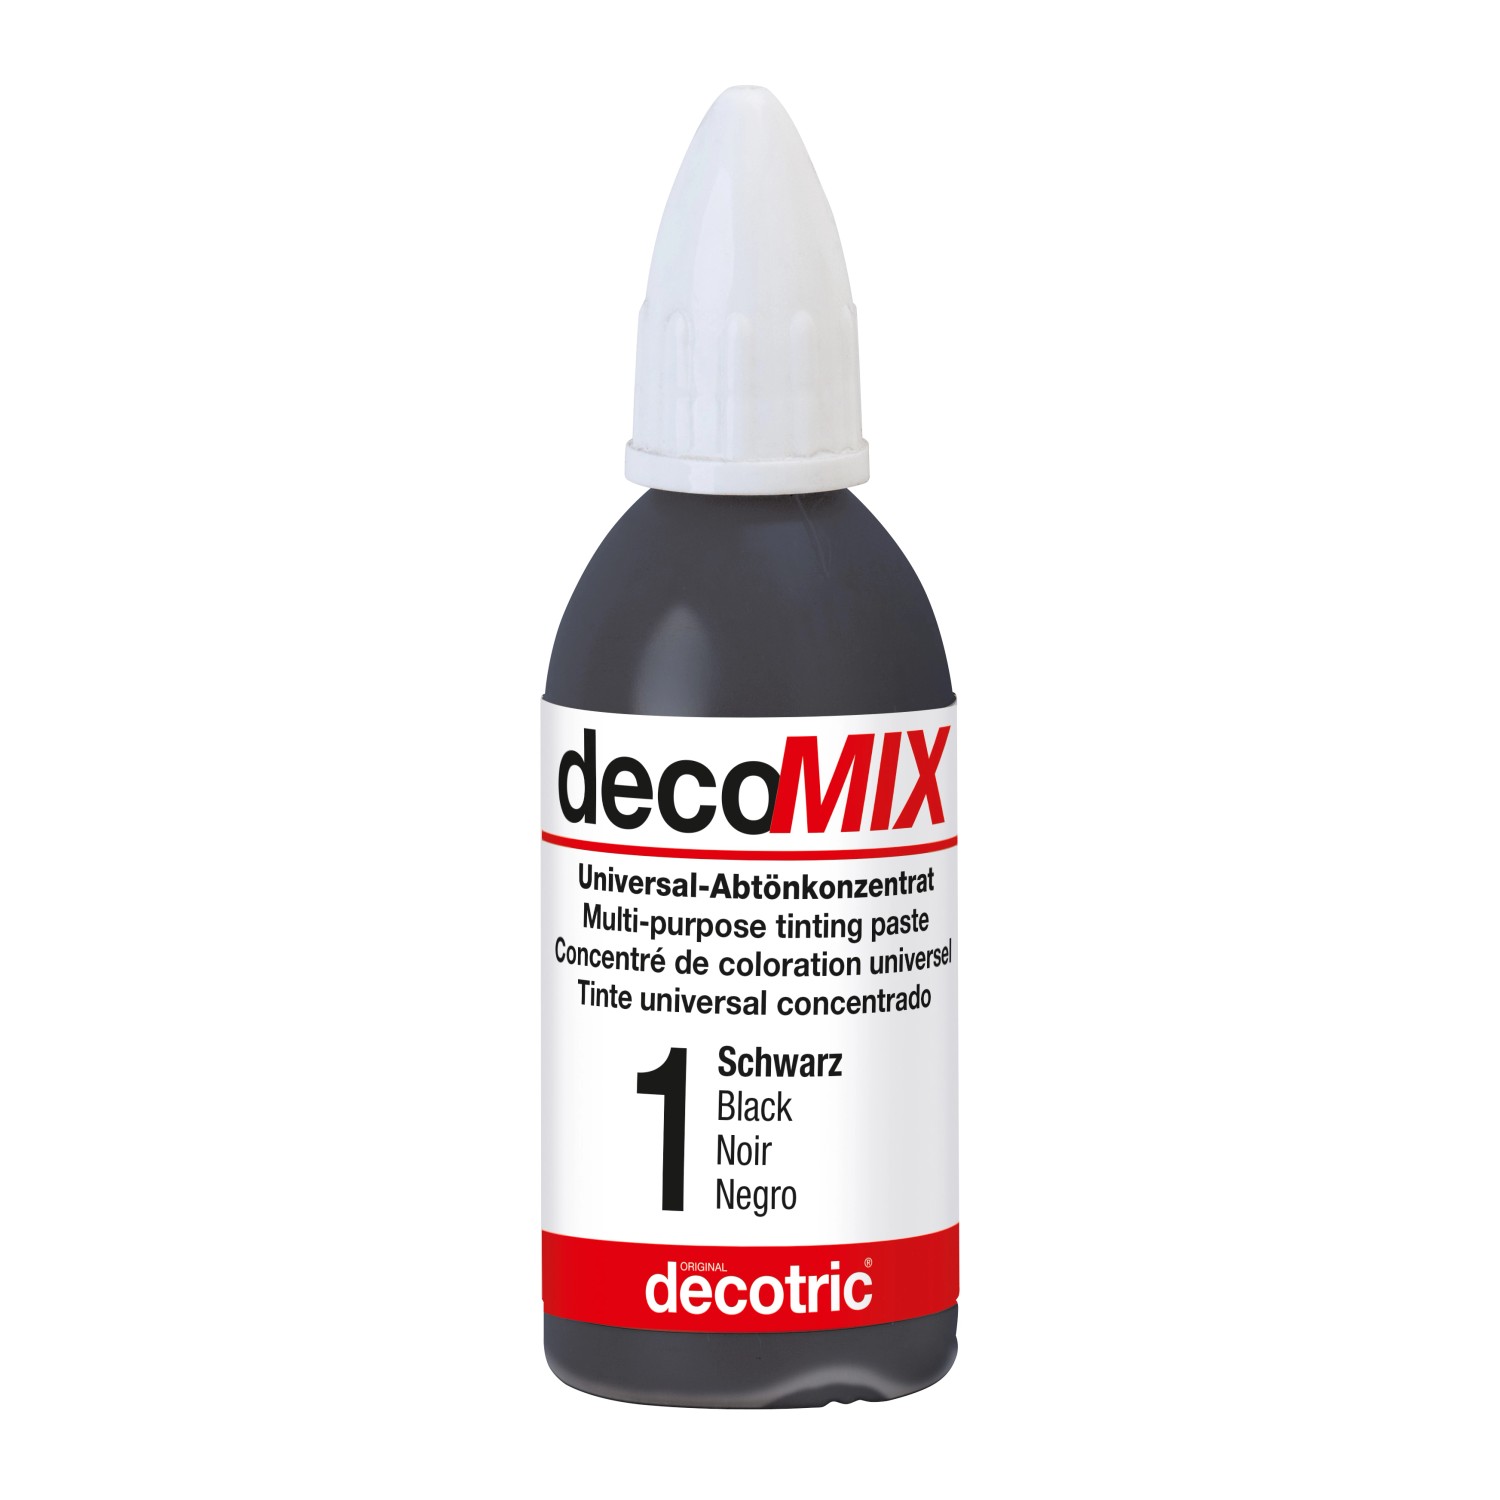 Decomix Universal-Abtönkonzentrat Schwarz 20 ml